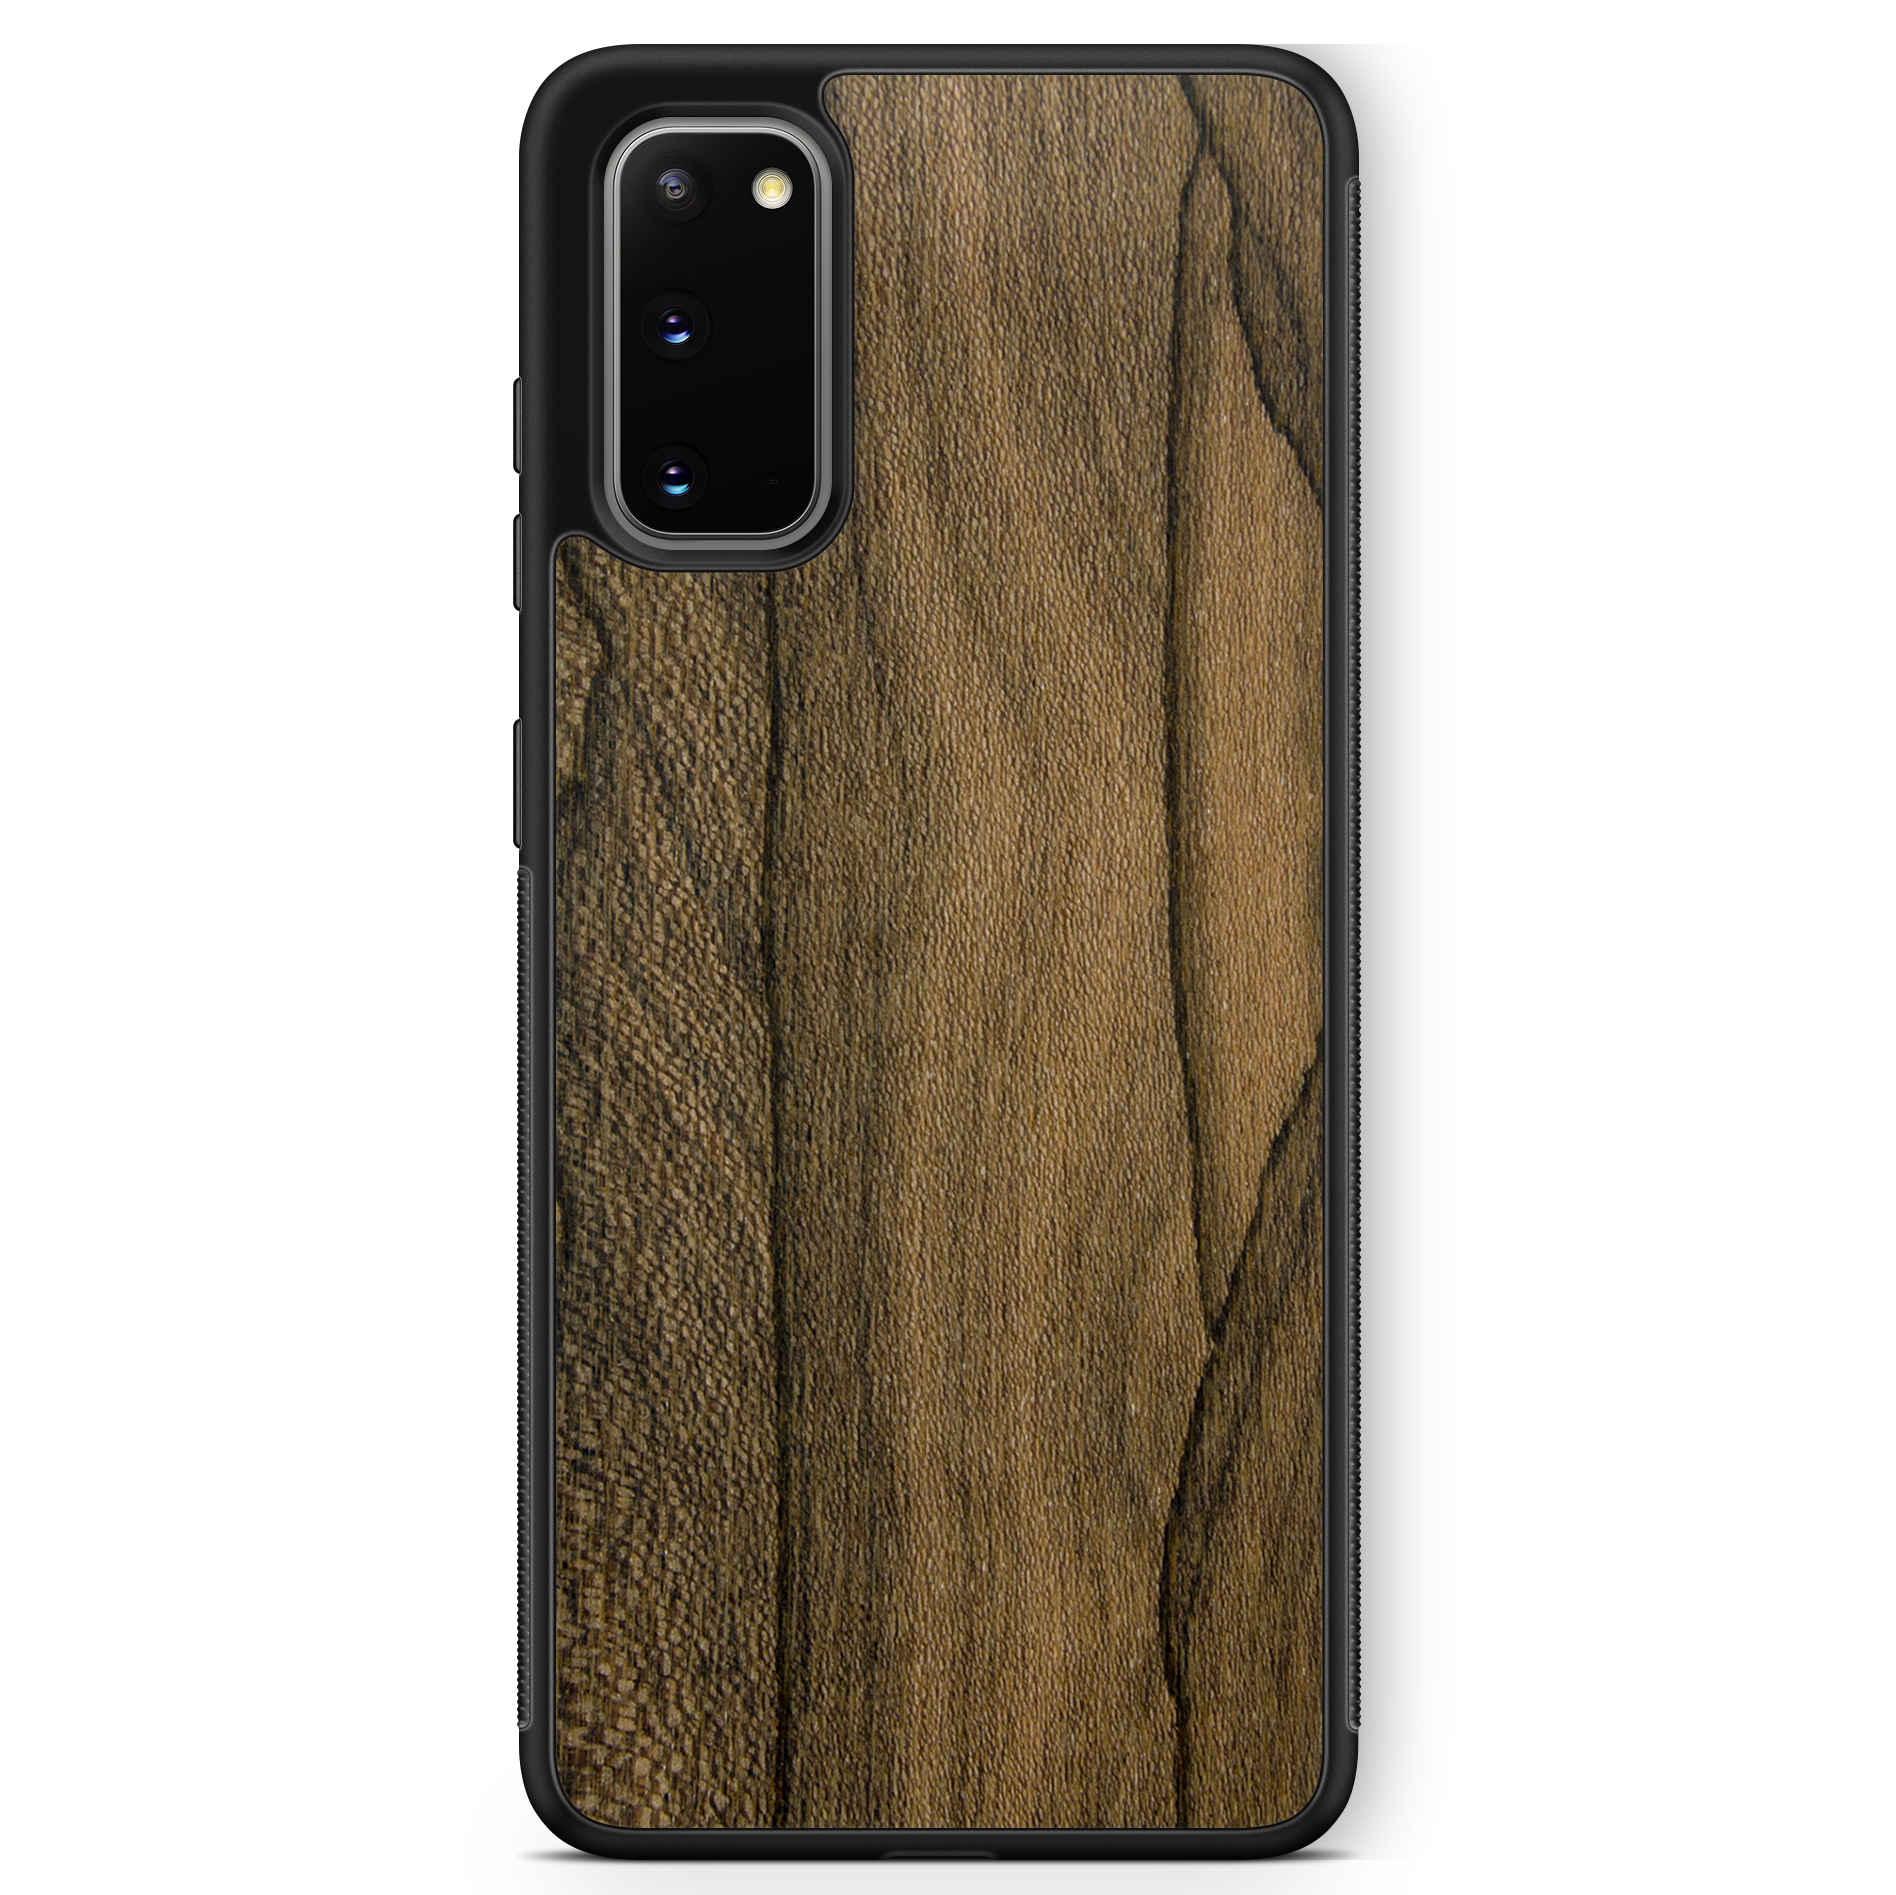 Custodia per cellulare Samsung S20 in legno Ziricote